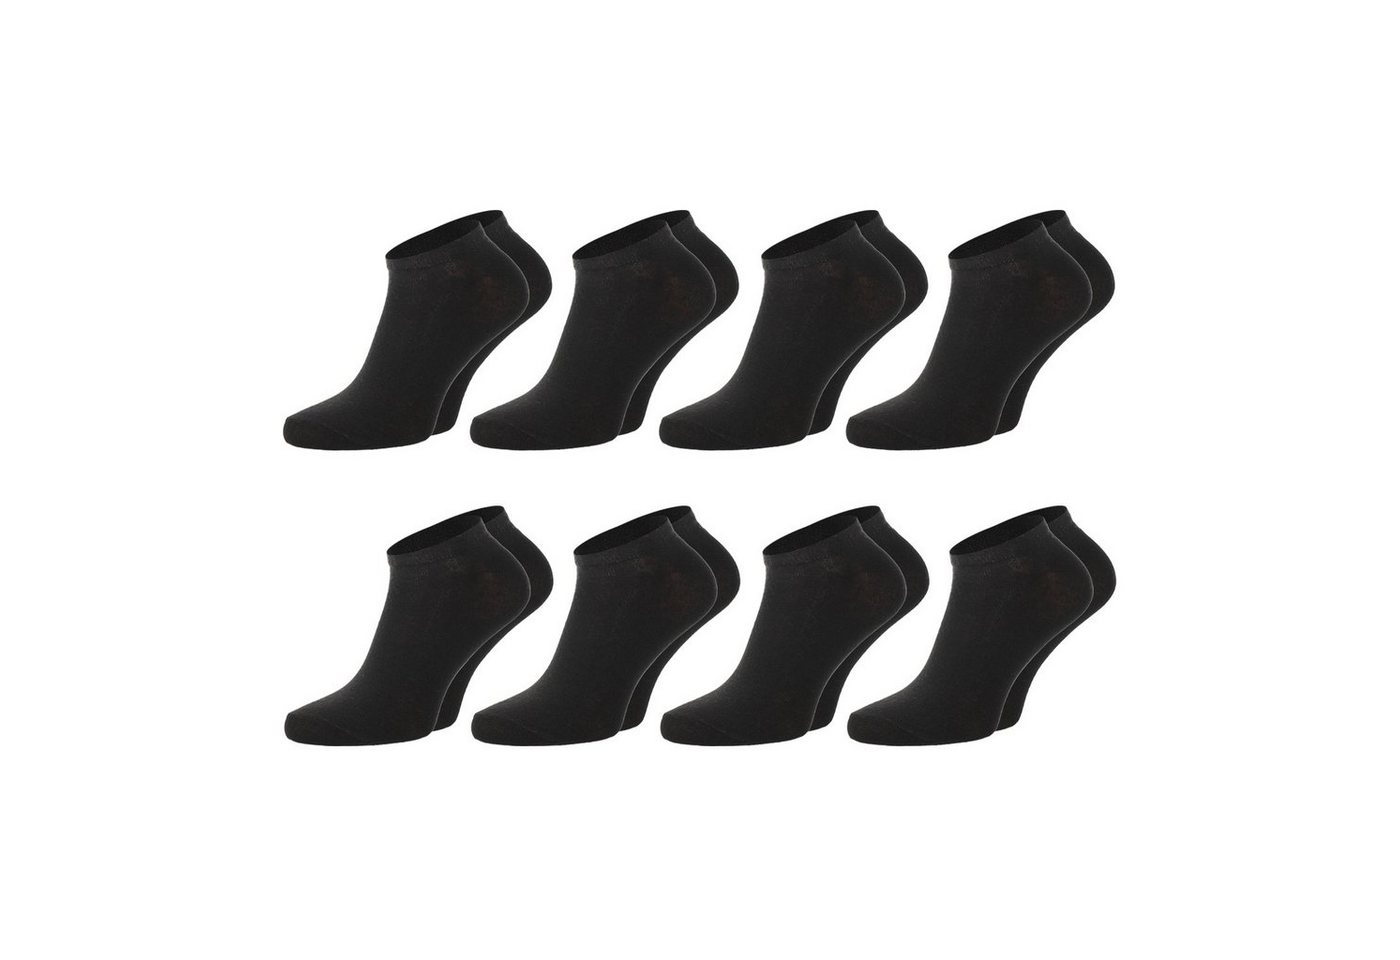 Chili Lifestyle Strümpfe Sneaker Schwarz, 8 Paar, für Damen und Herren, Sport, Freizeit von Chili Lifestyle